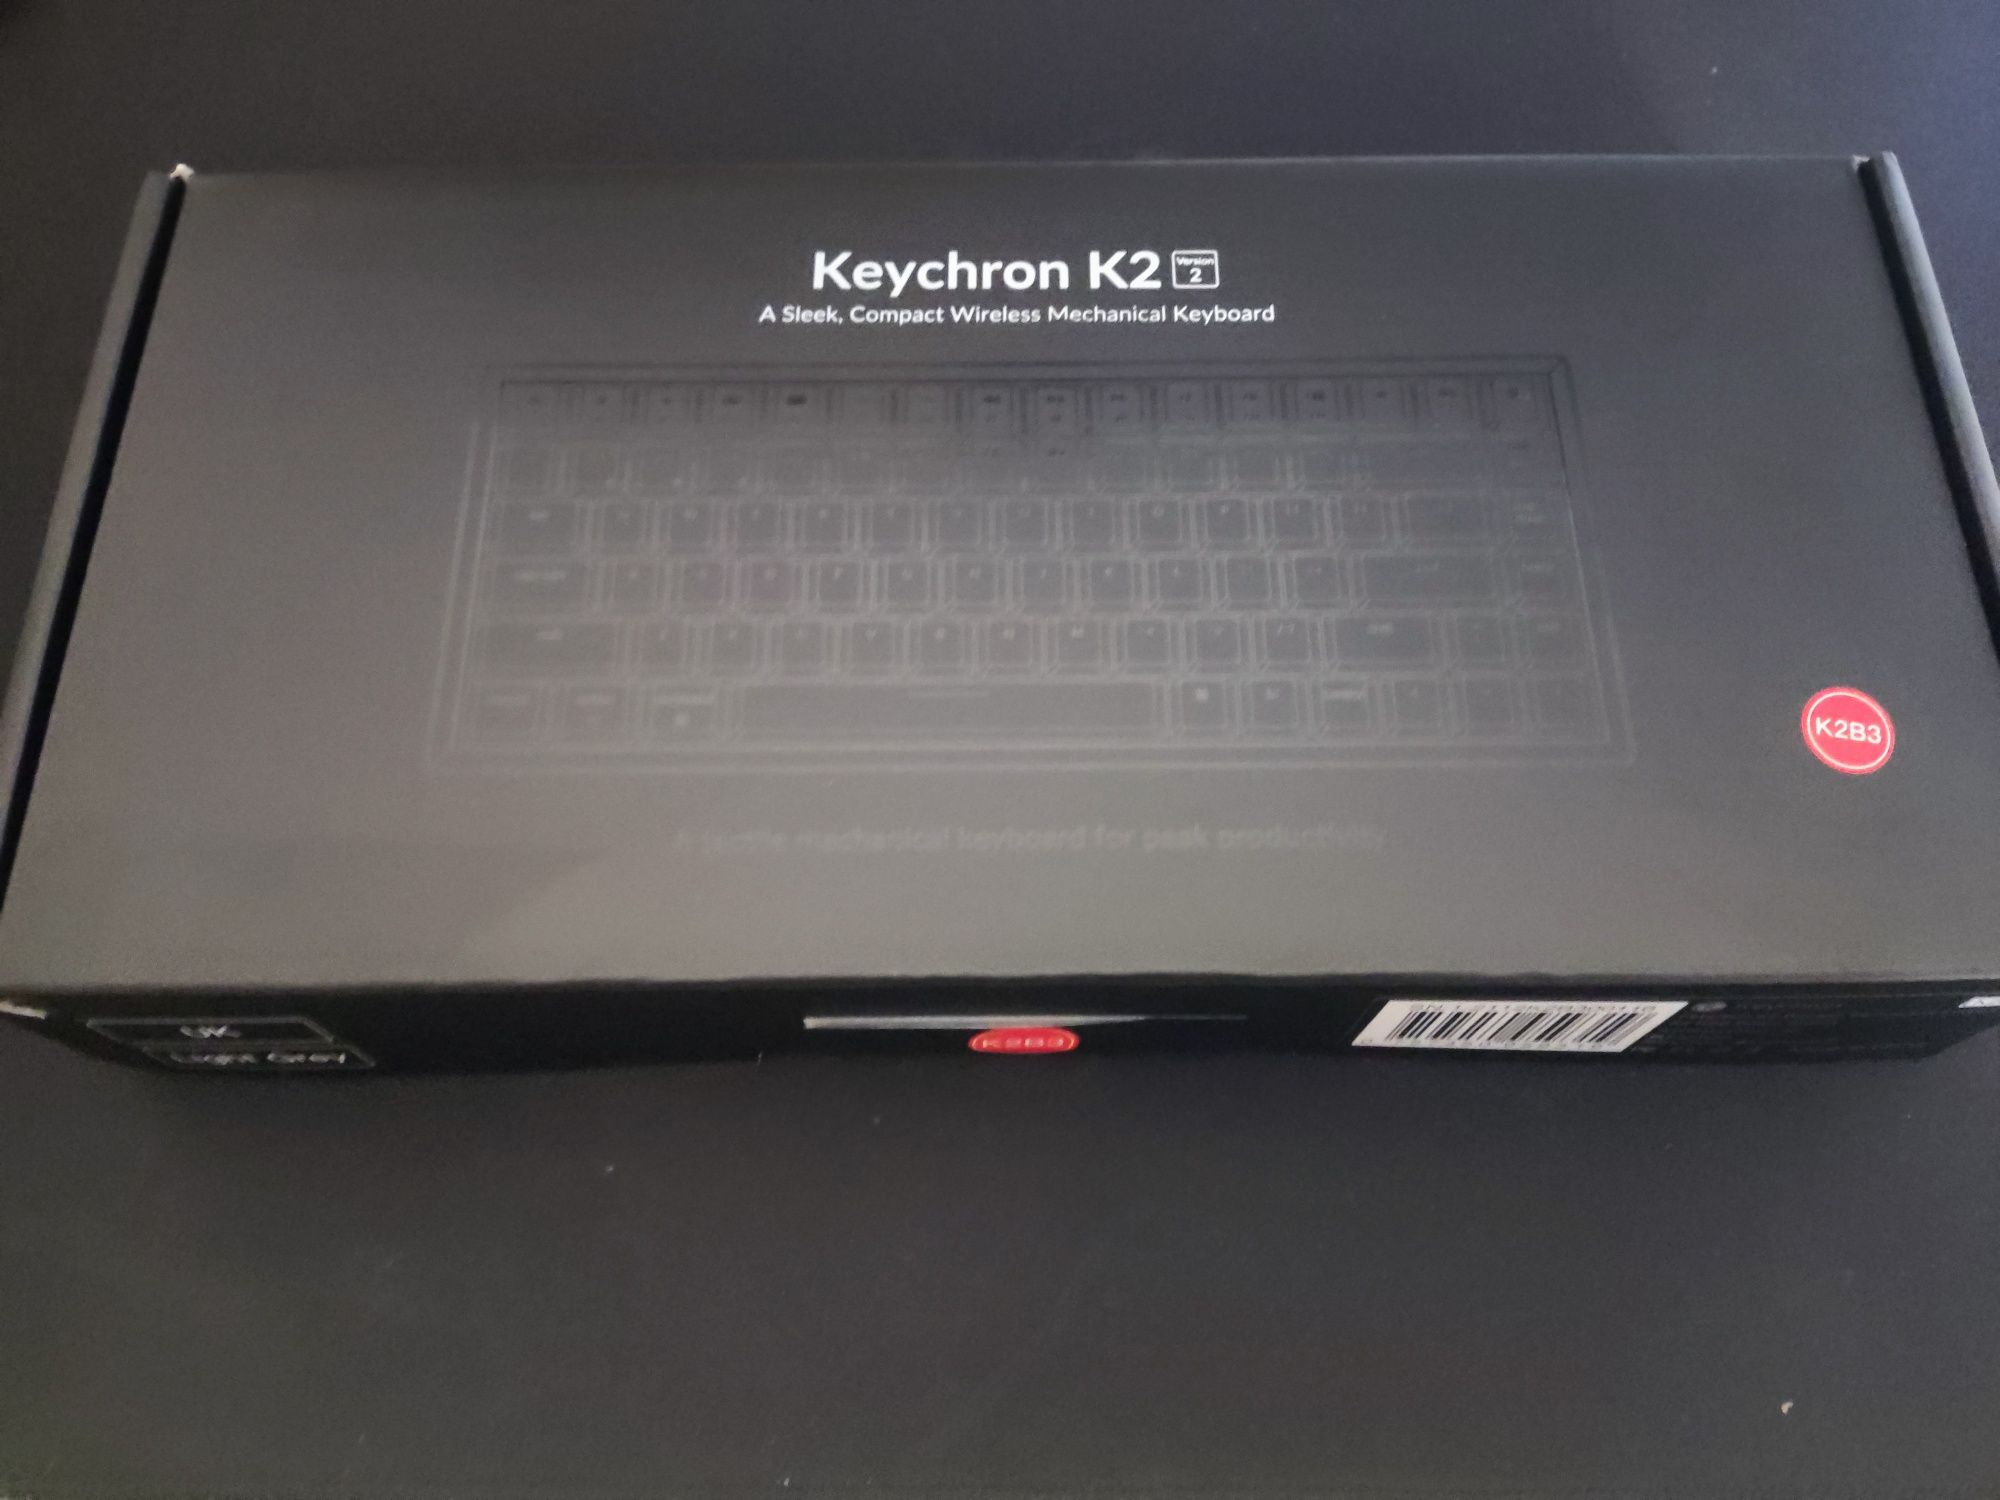 Teclado Keychron K2 - Wireless and RGB Keyboard